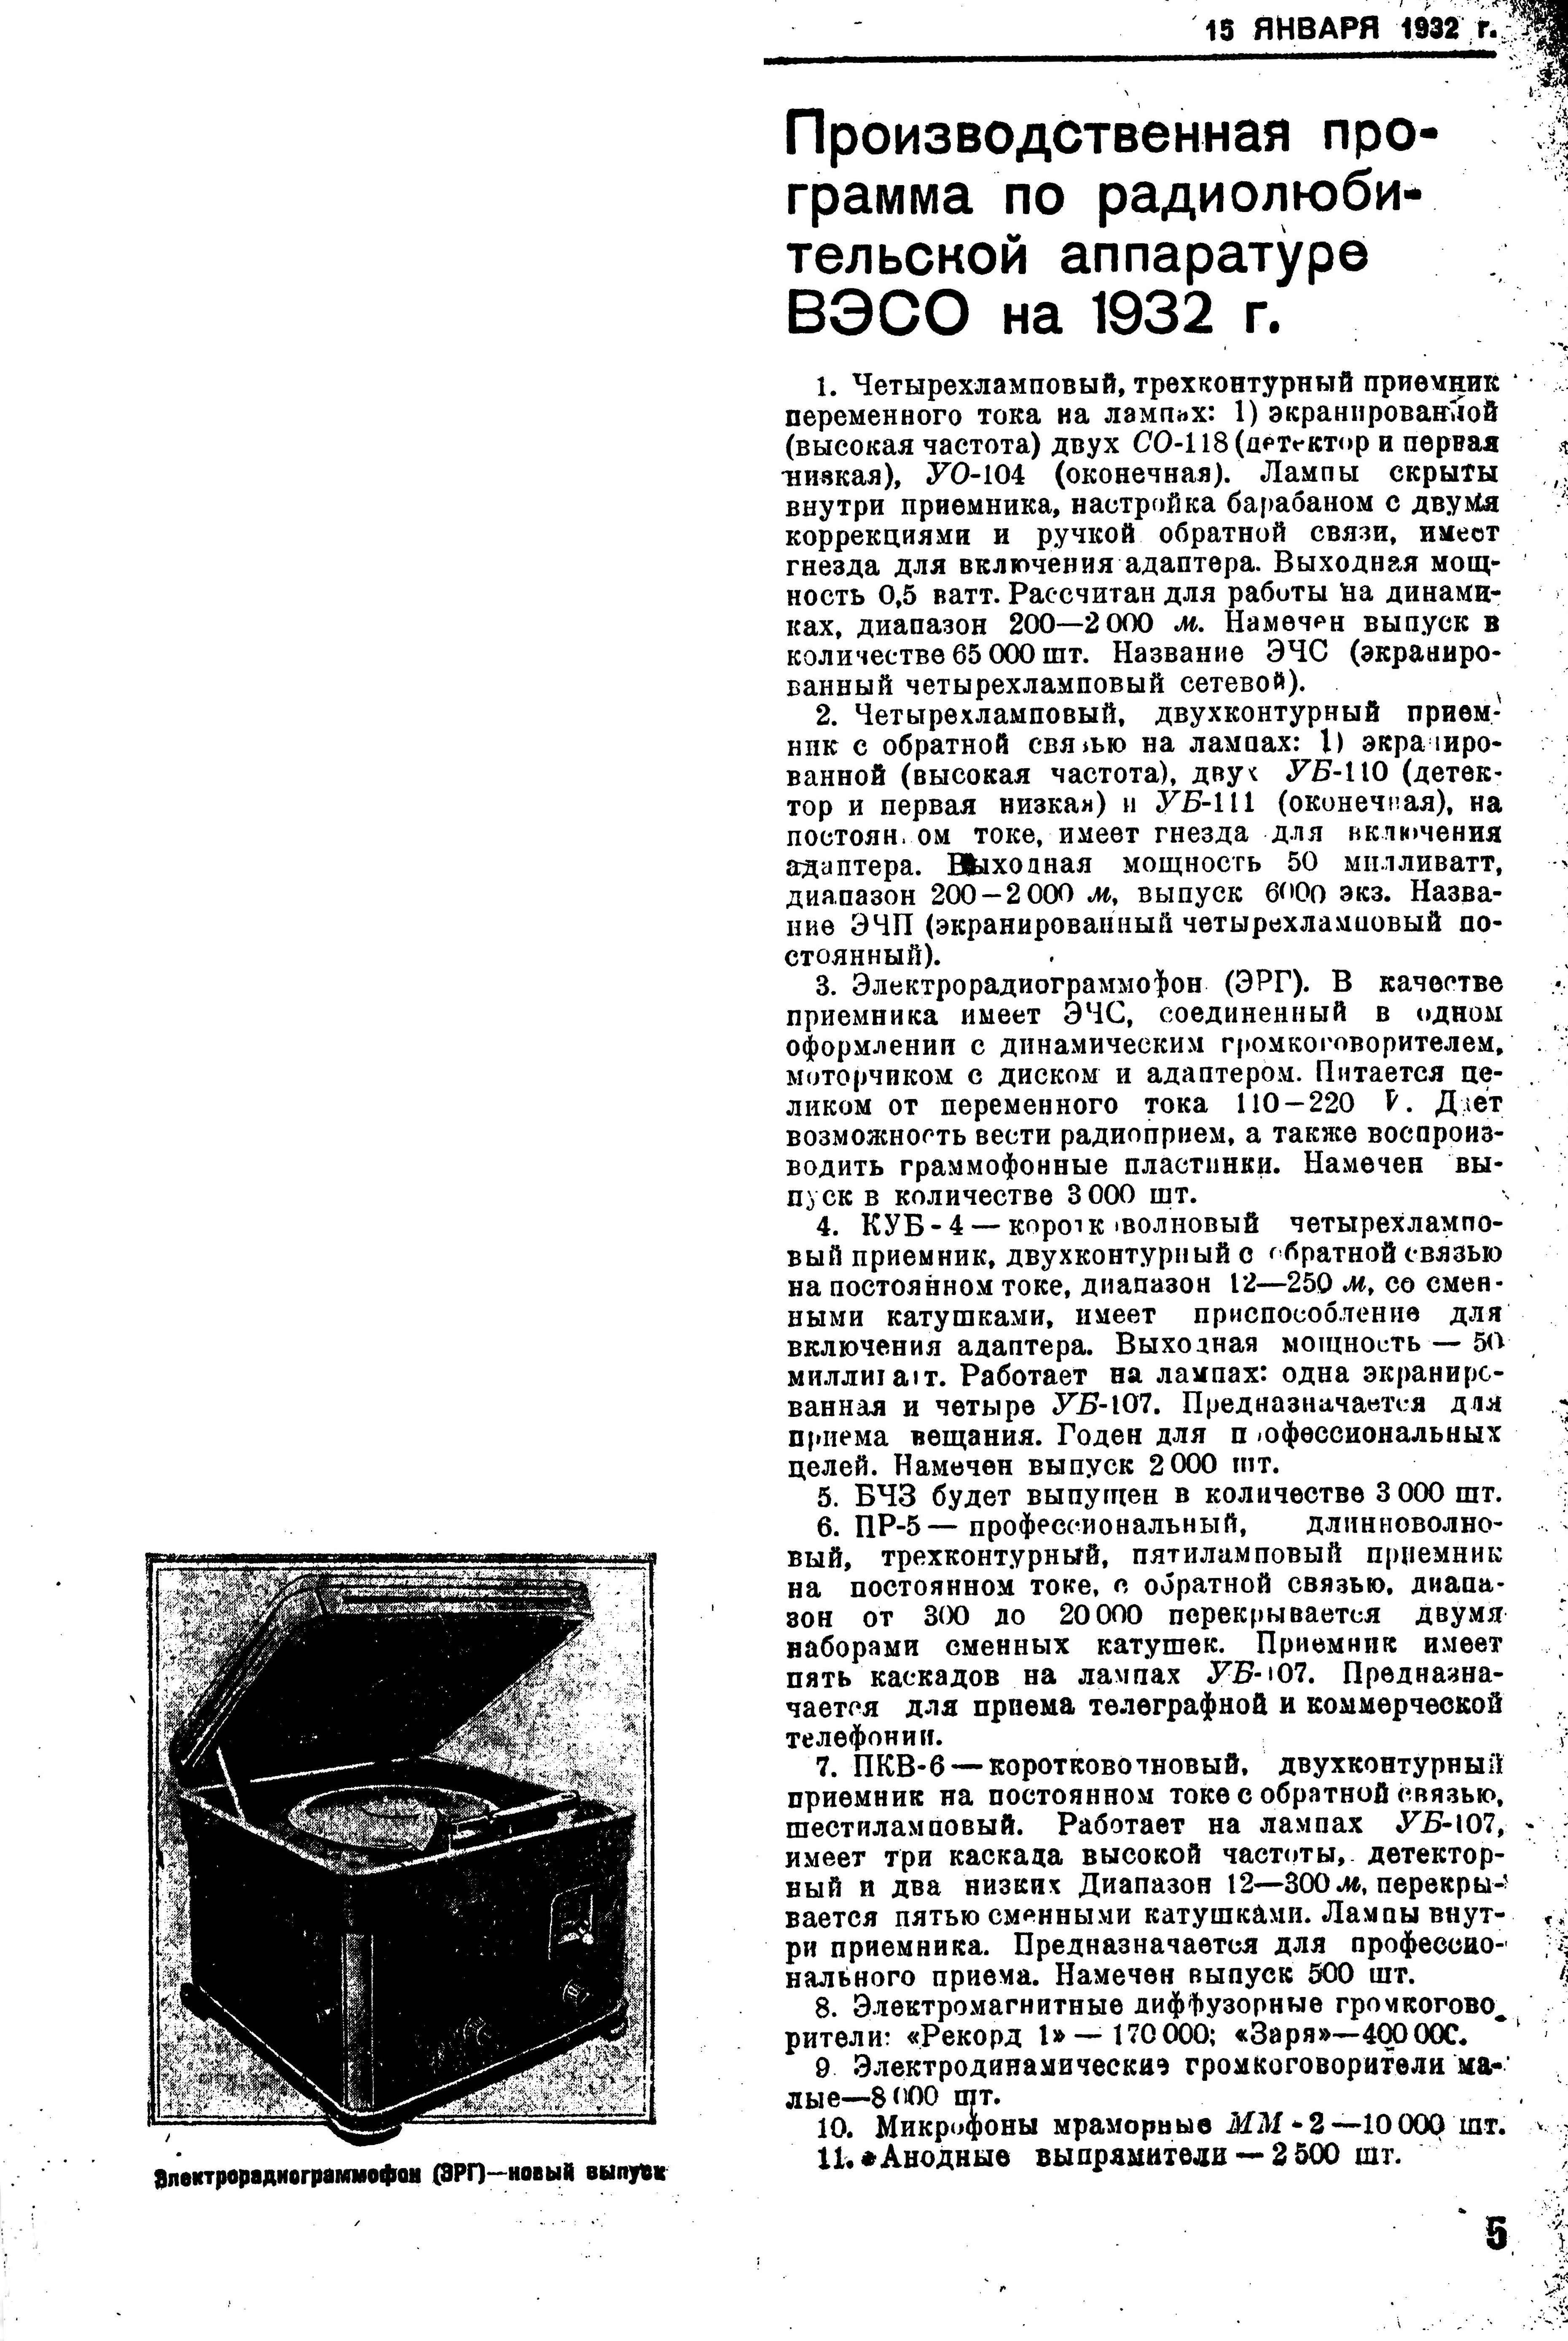 Производственная программа по радиолюбительской радиоаппаратуре ВЭСО на 1932 г.